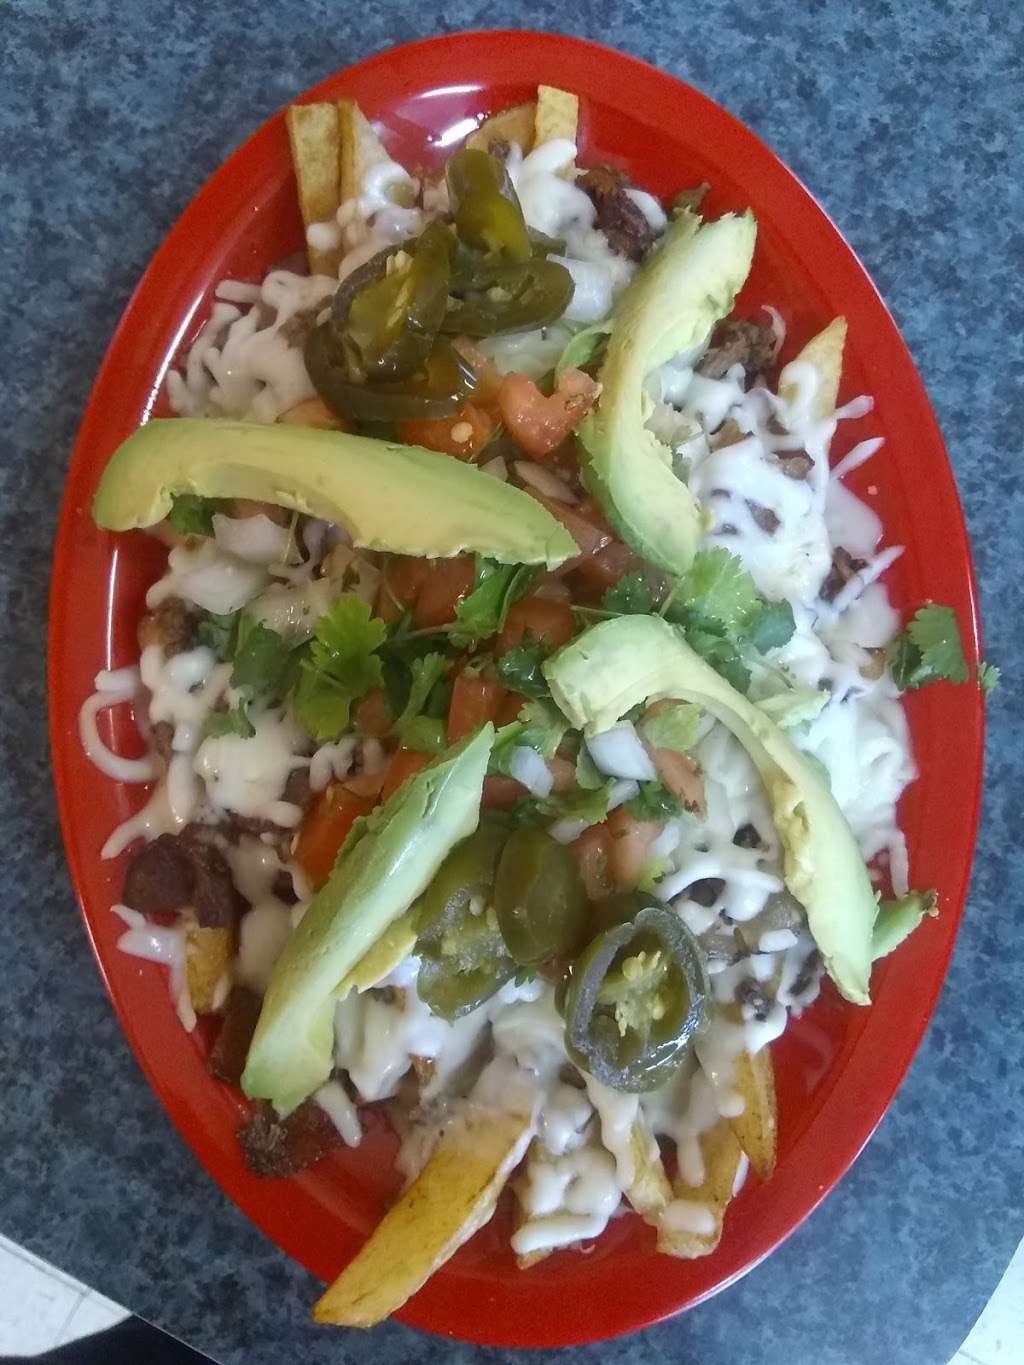 El torito tacos y mas | 637 Enrique M. Barrera Pkwy, San Antonio, TX 78237, USA | Phone: (210) 400-5839